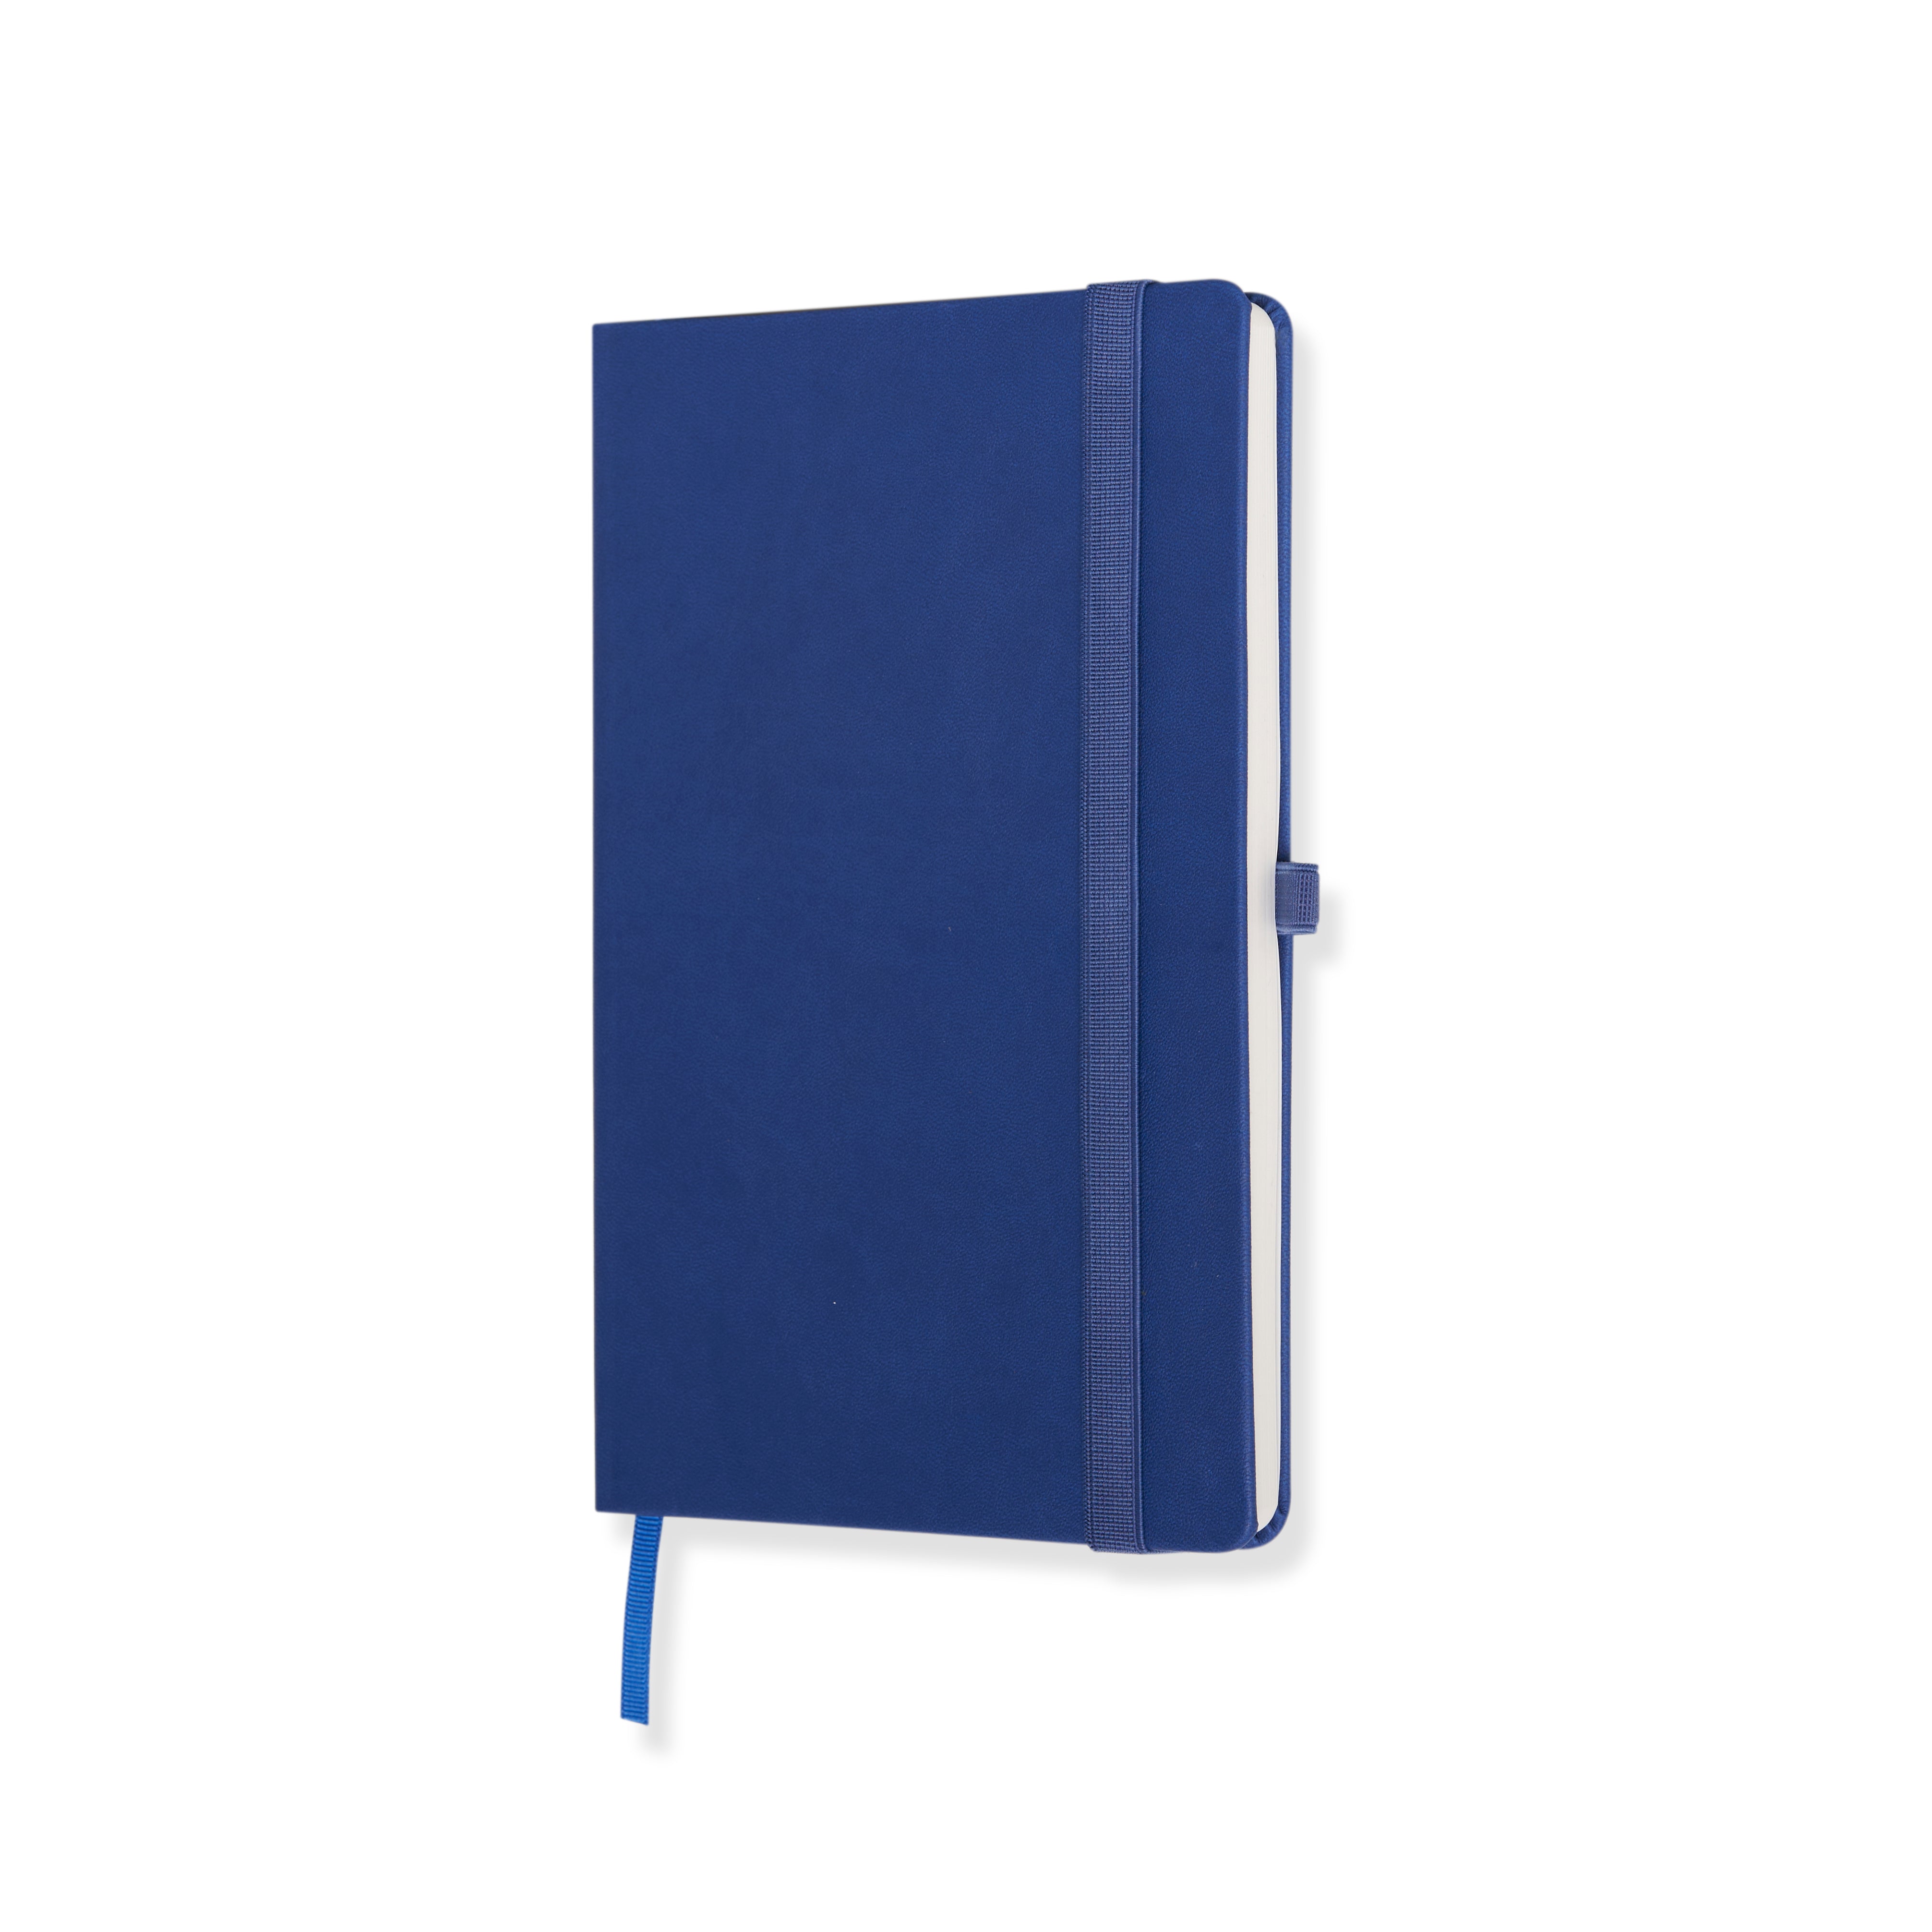 Doodle Apex Executive A5 PU Leather Hardbound Diary - Blue